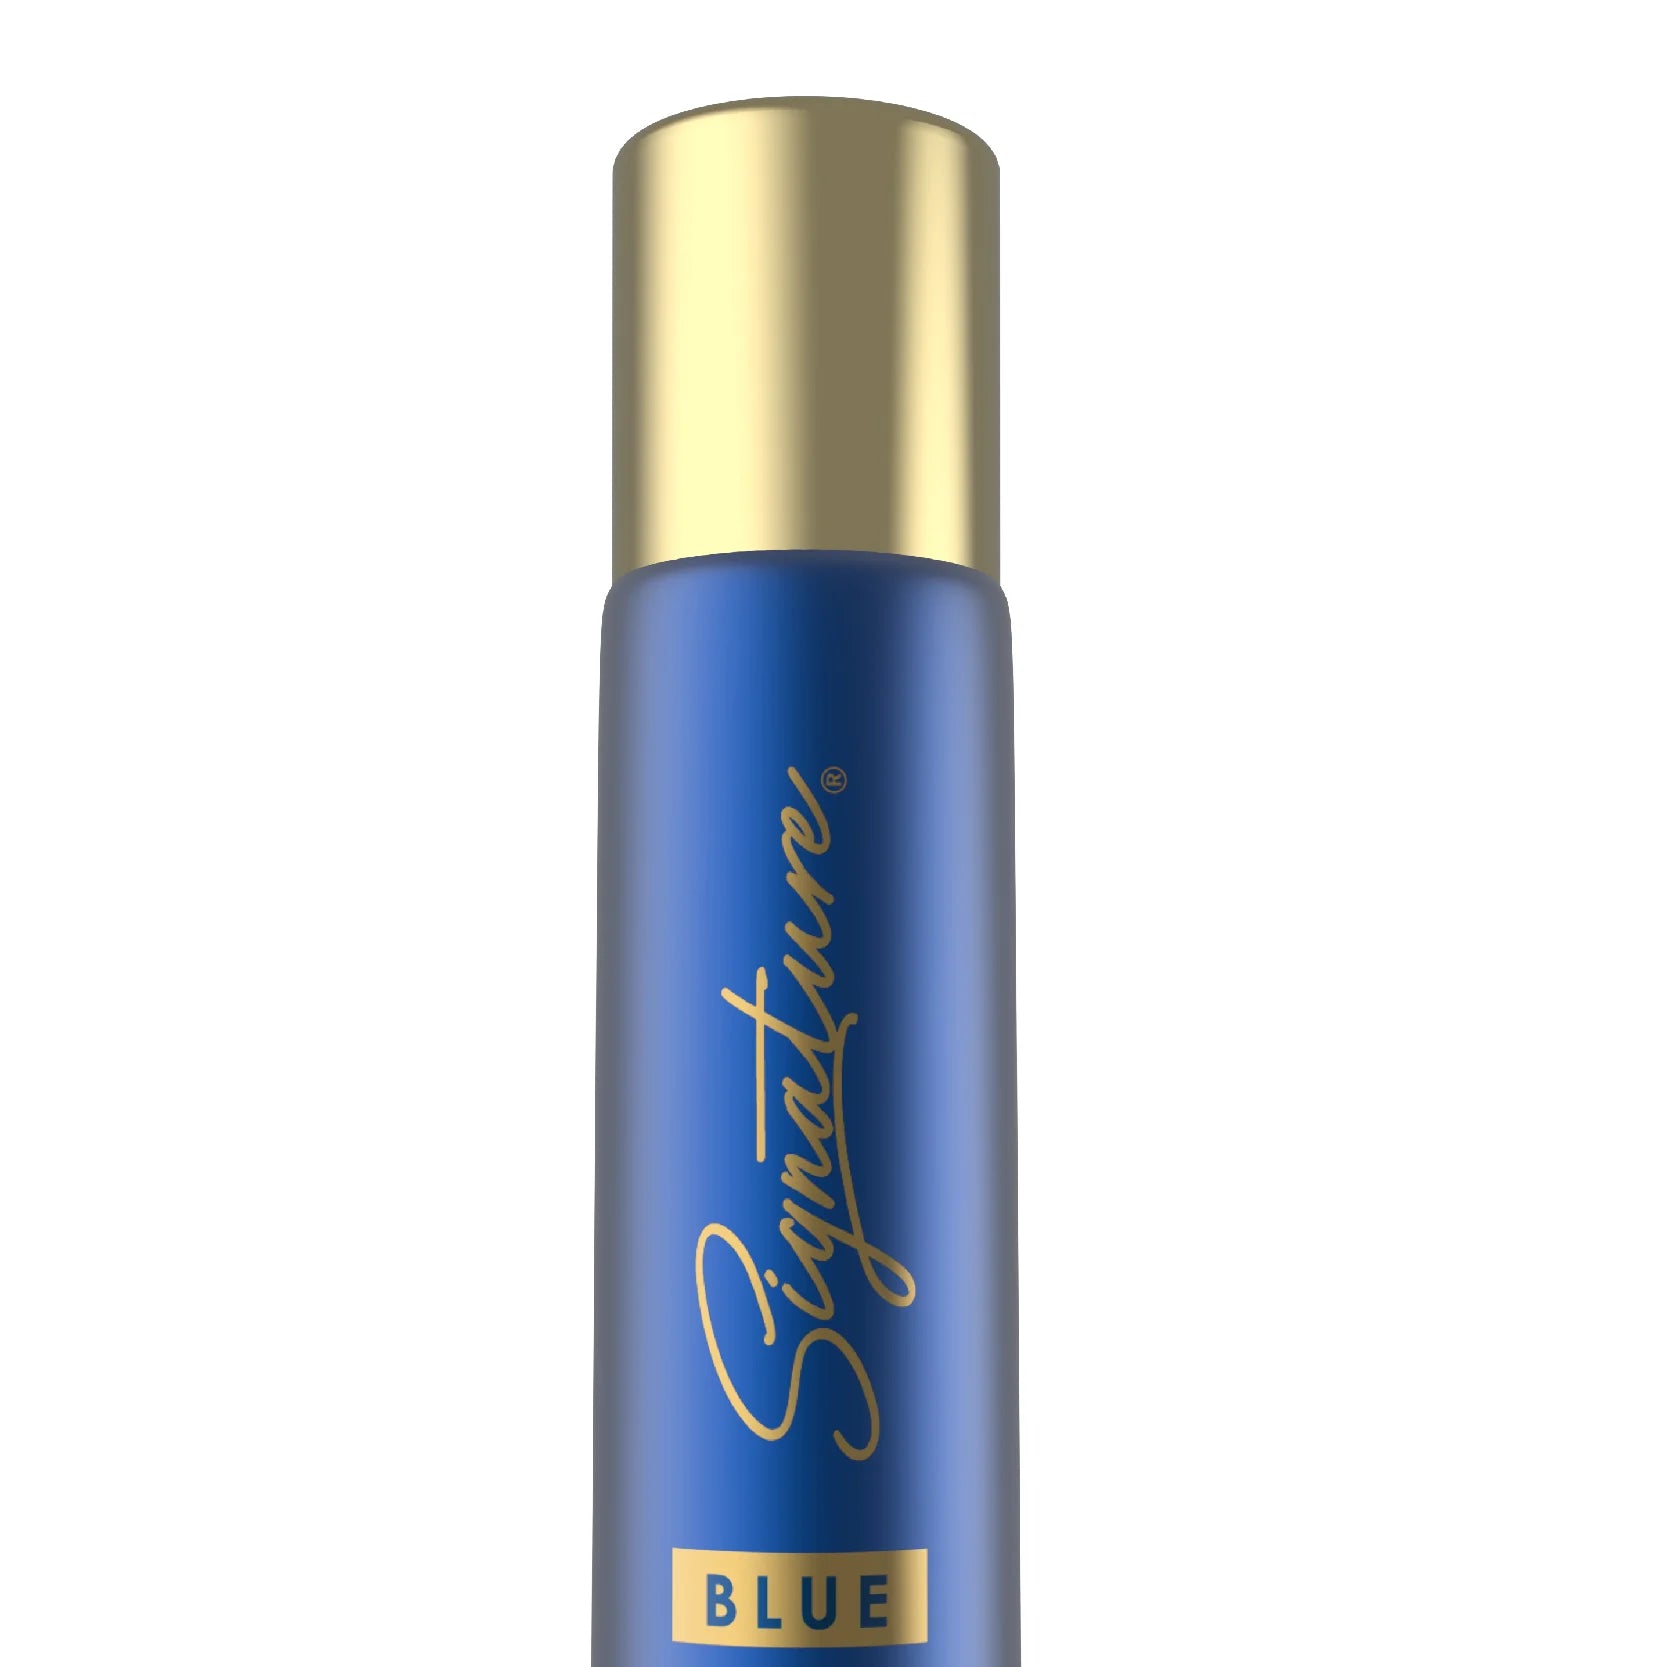 Signature Blue 70 Ml Deodorant Close Up